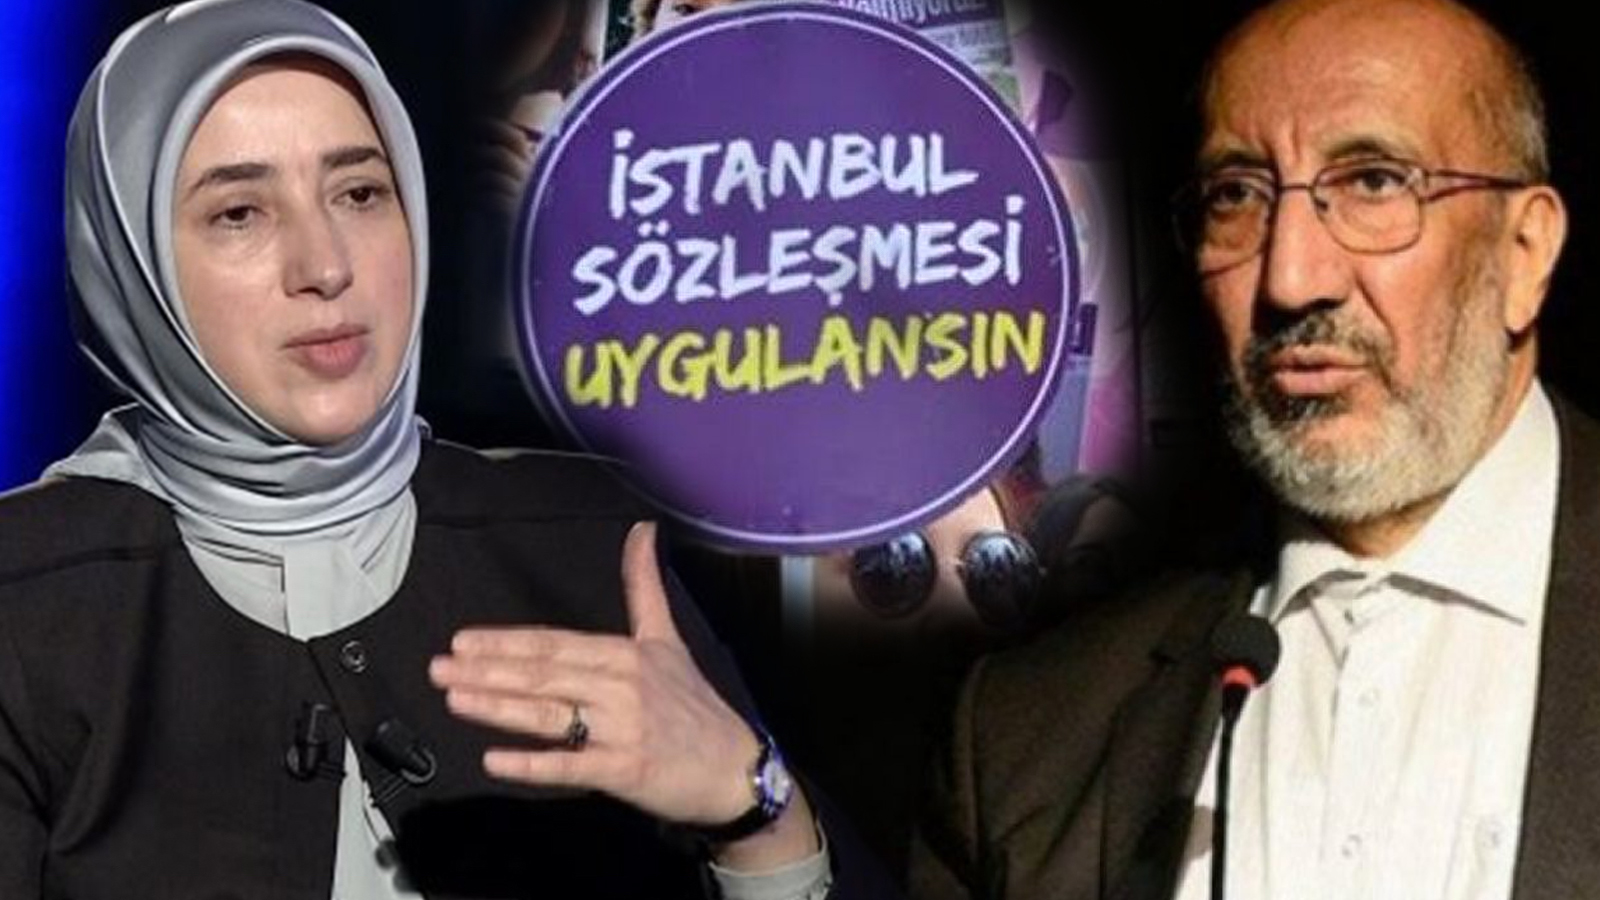 islamci camiada catlak yaratan tartisma istanbul sozlesmesi haberler tamgaturk